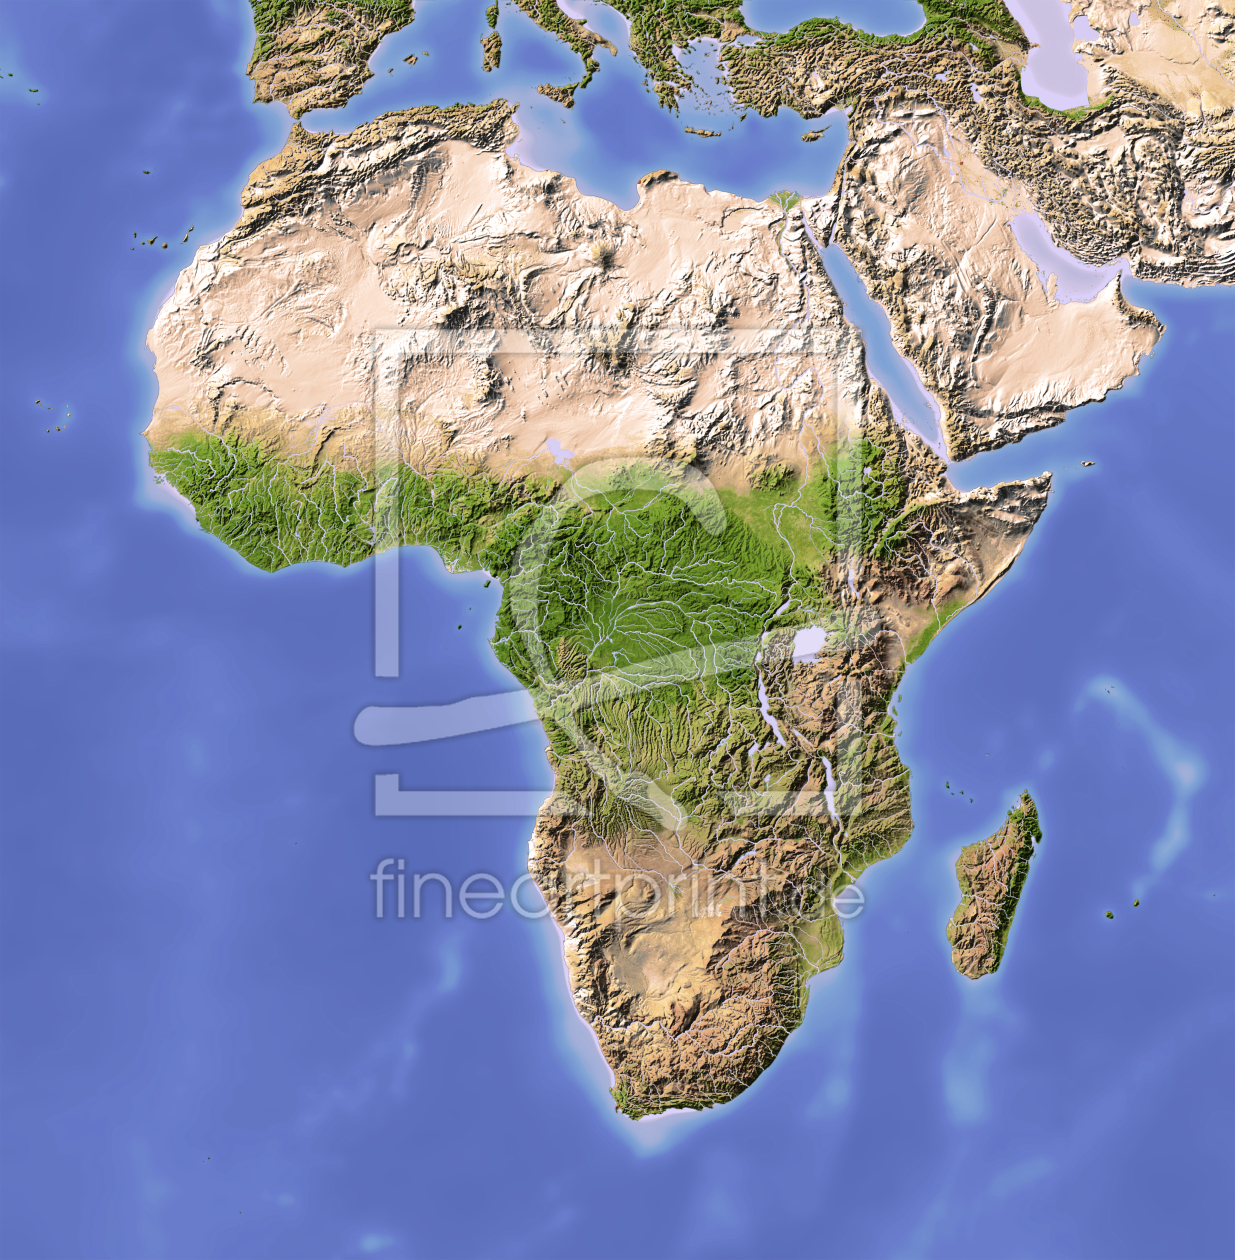 Bild-Nr.: 9979977 Afrika, Reliefkarte in natürlichen Farben erstellt von AridOcean